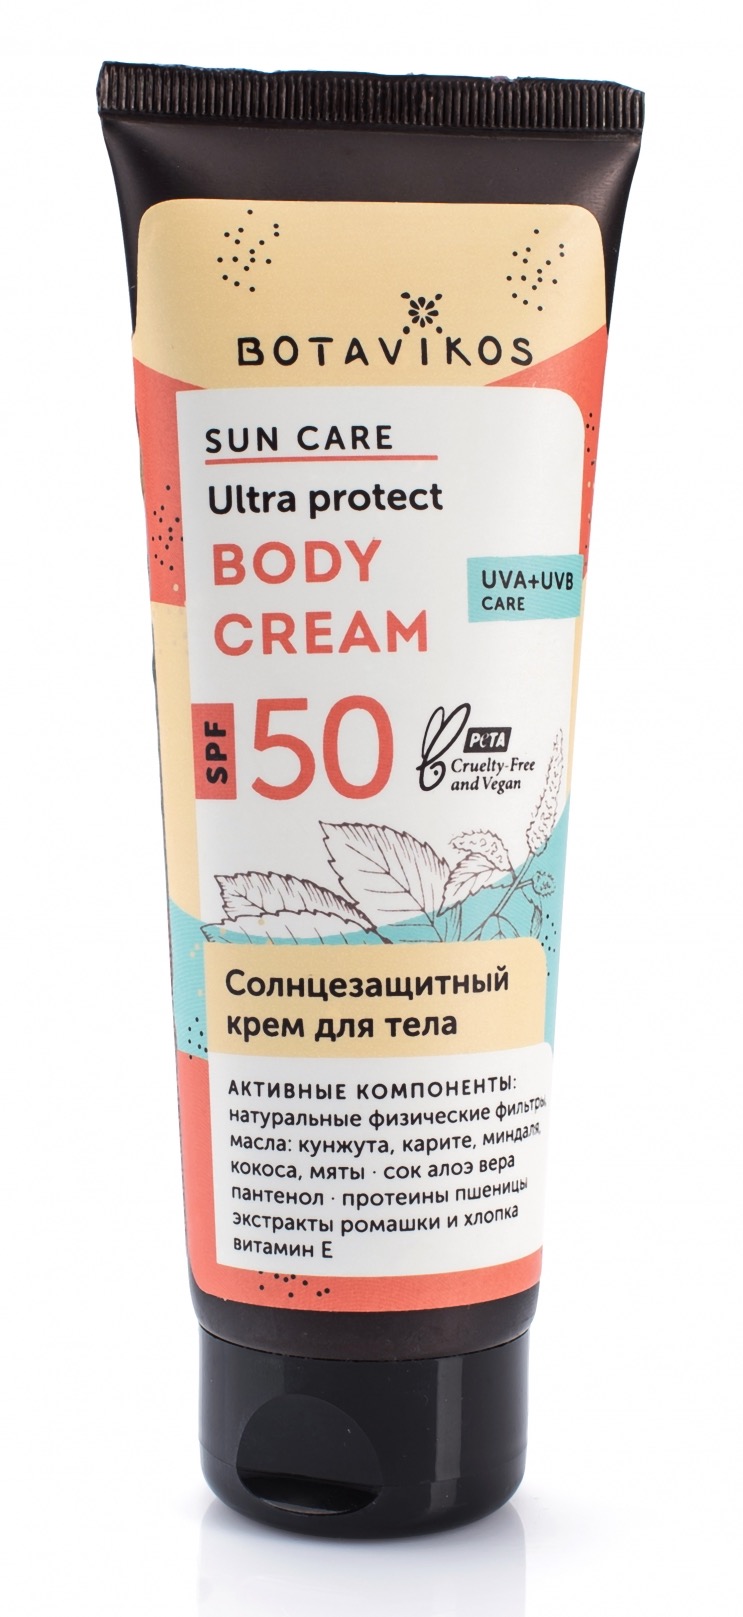 Крем для тела солнцезащитный Botavikos SPF50 (100мл)